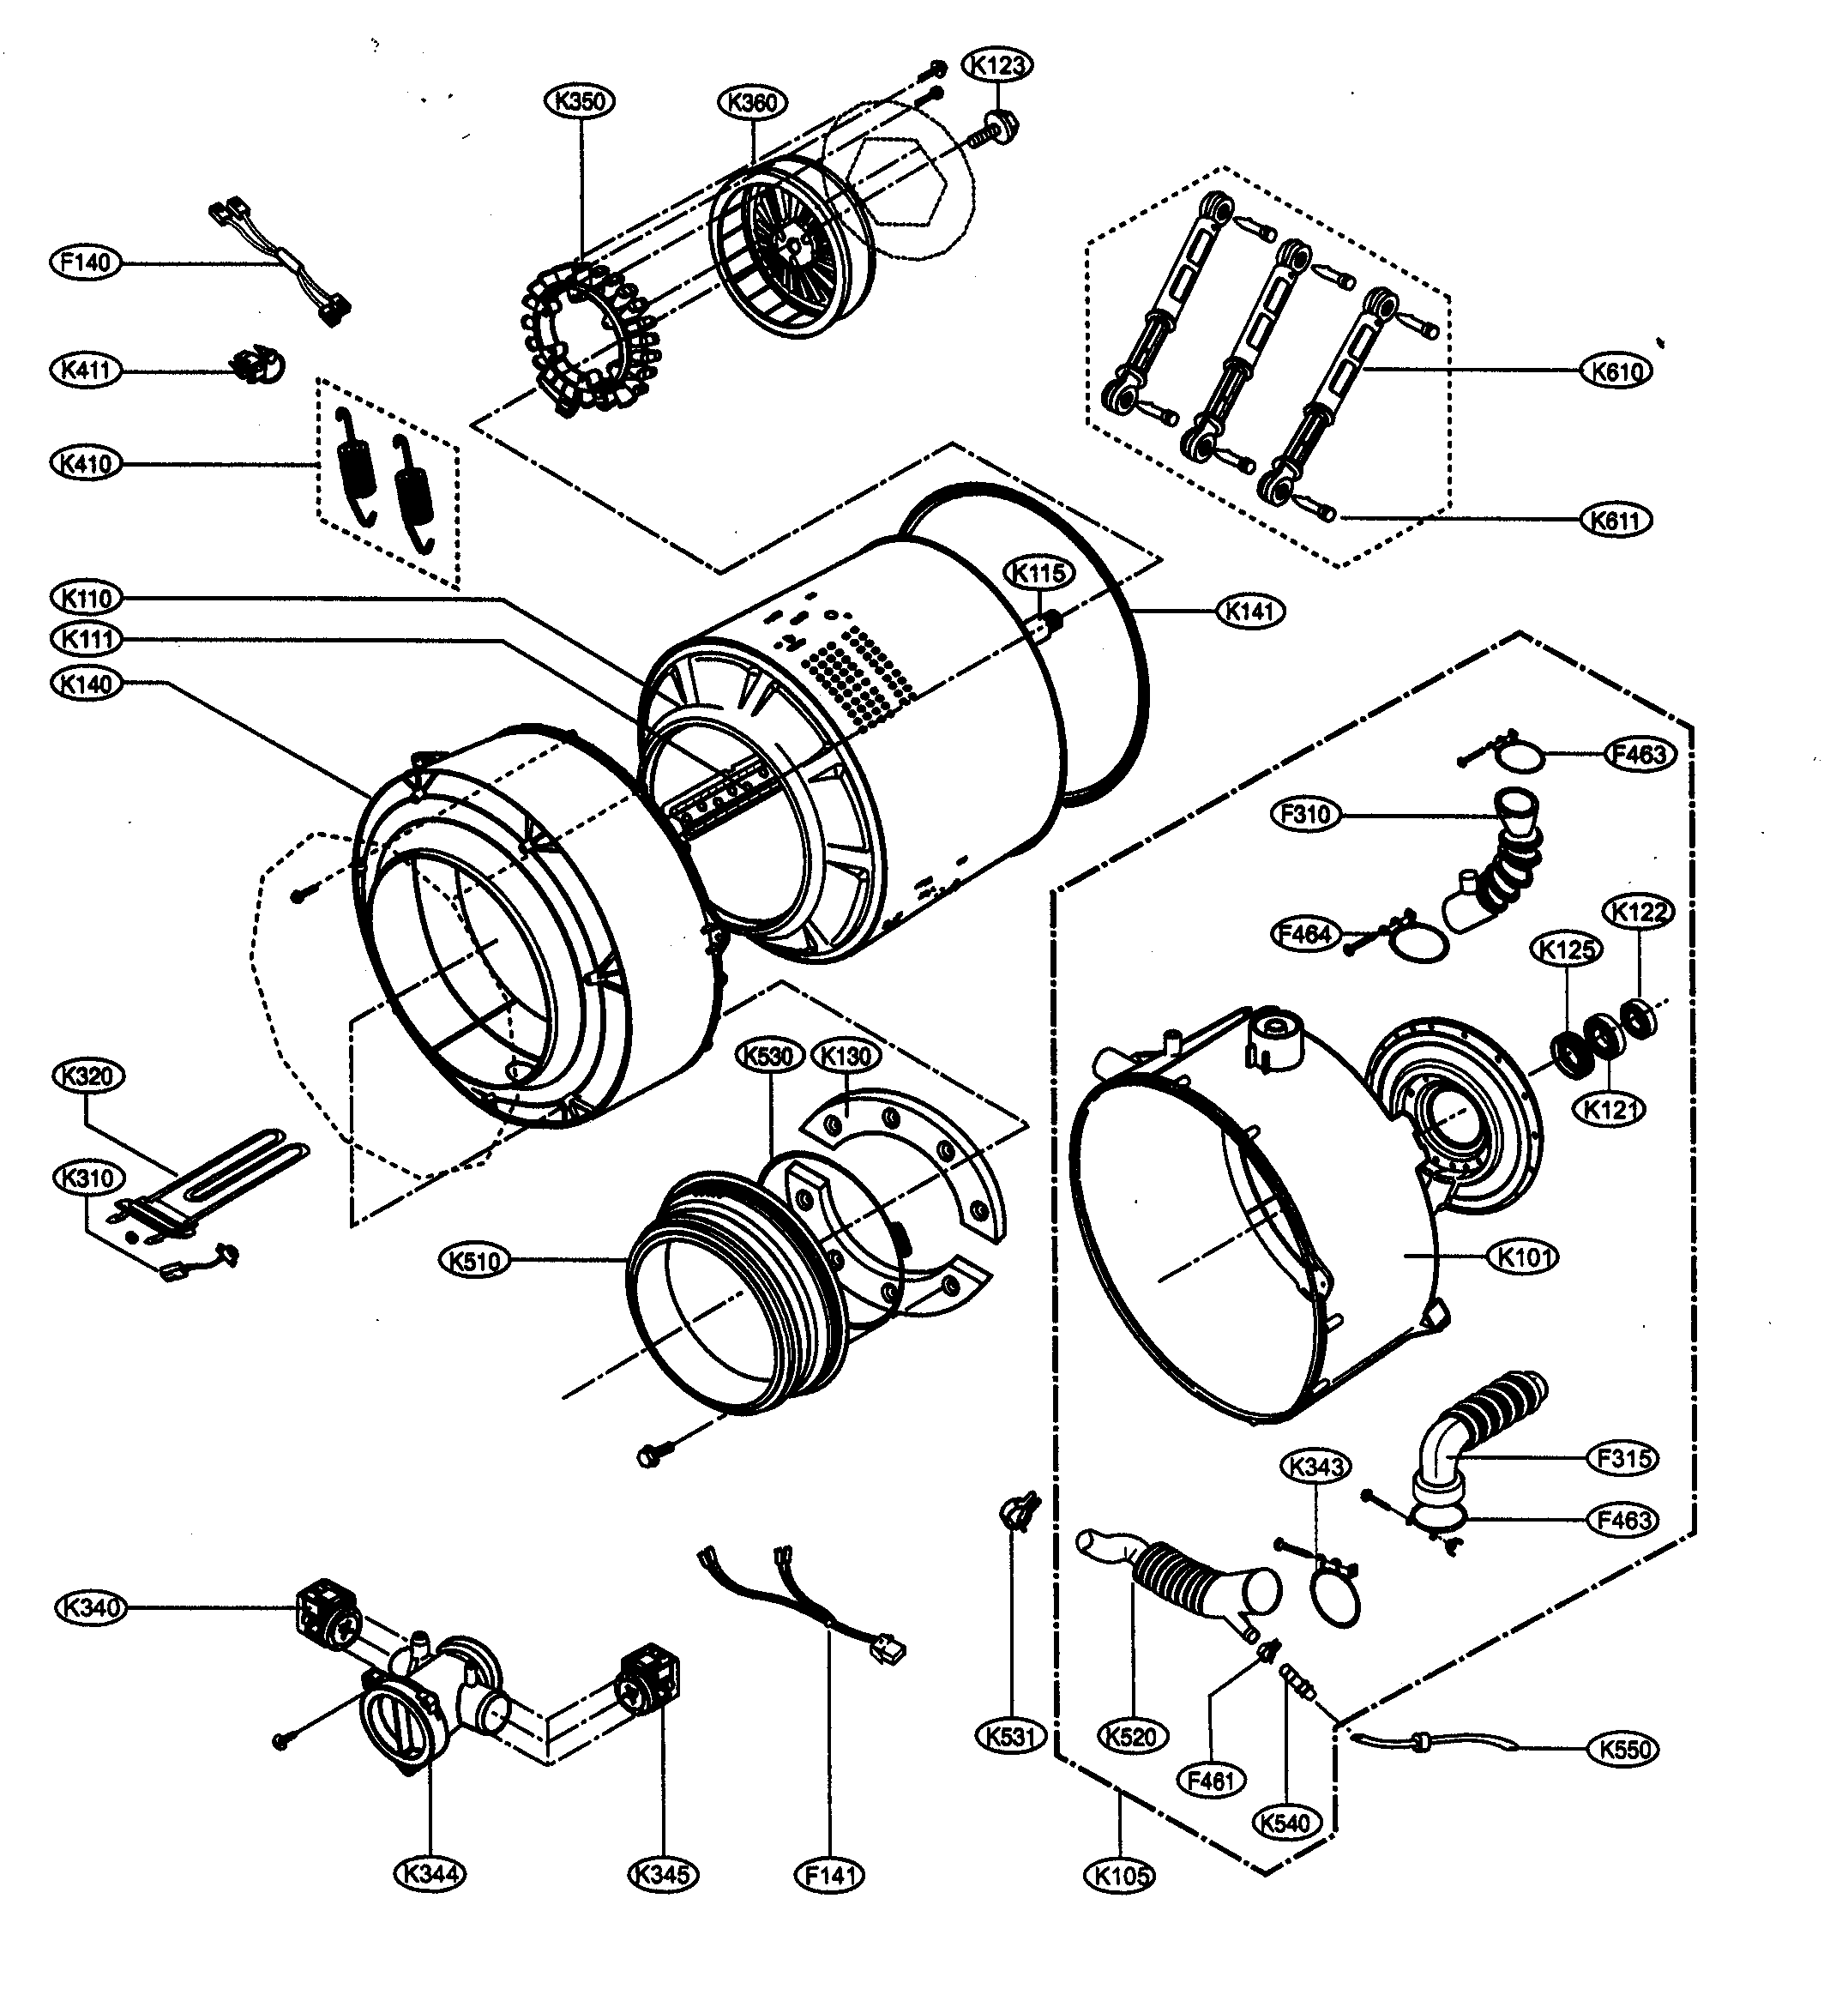 Diagram Wiring Diagram Lg Washing Machine Mydiagramonline 4136